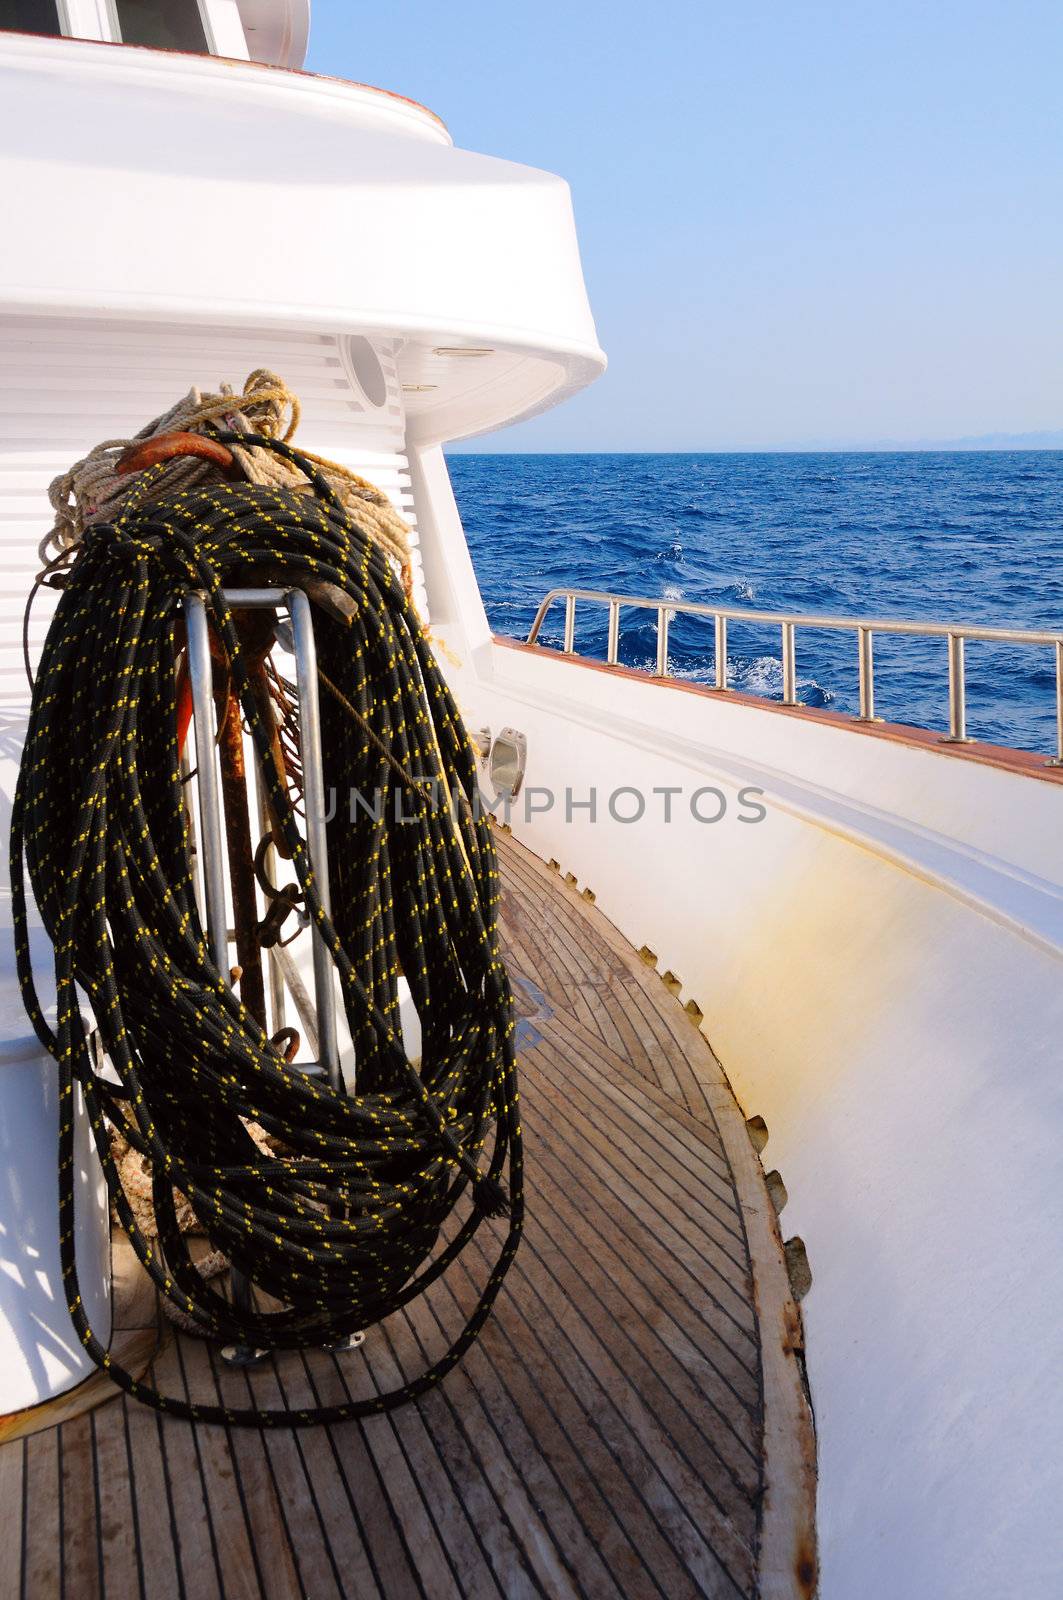 Bundle of rope on marine yacht by iryna_rasko